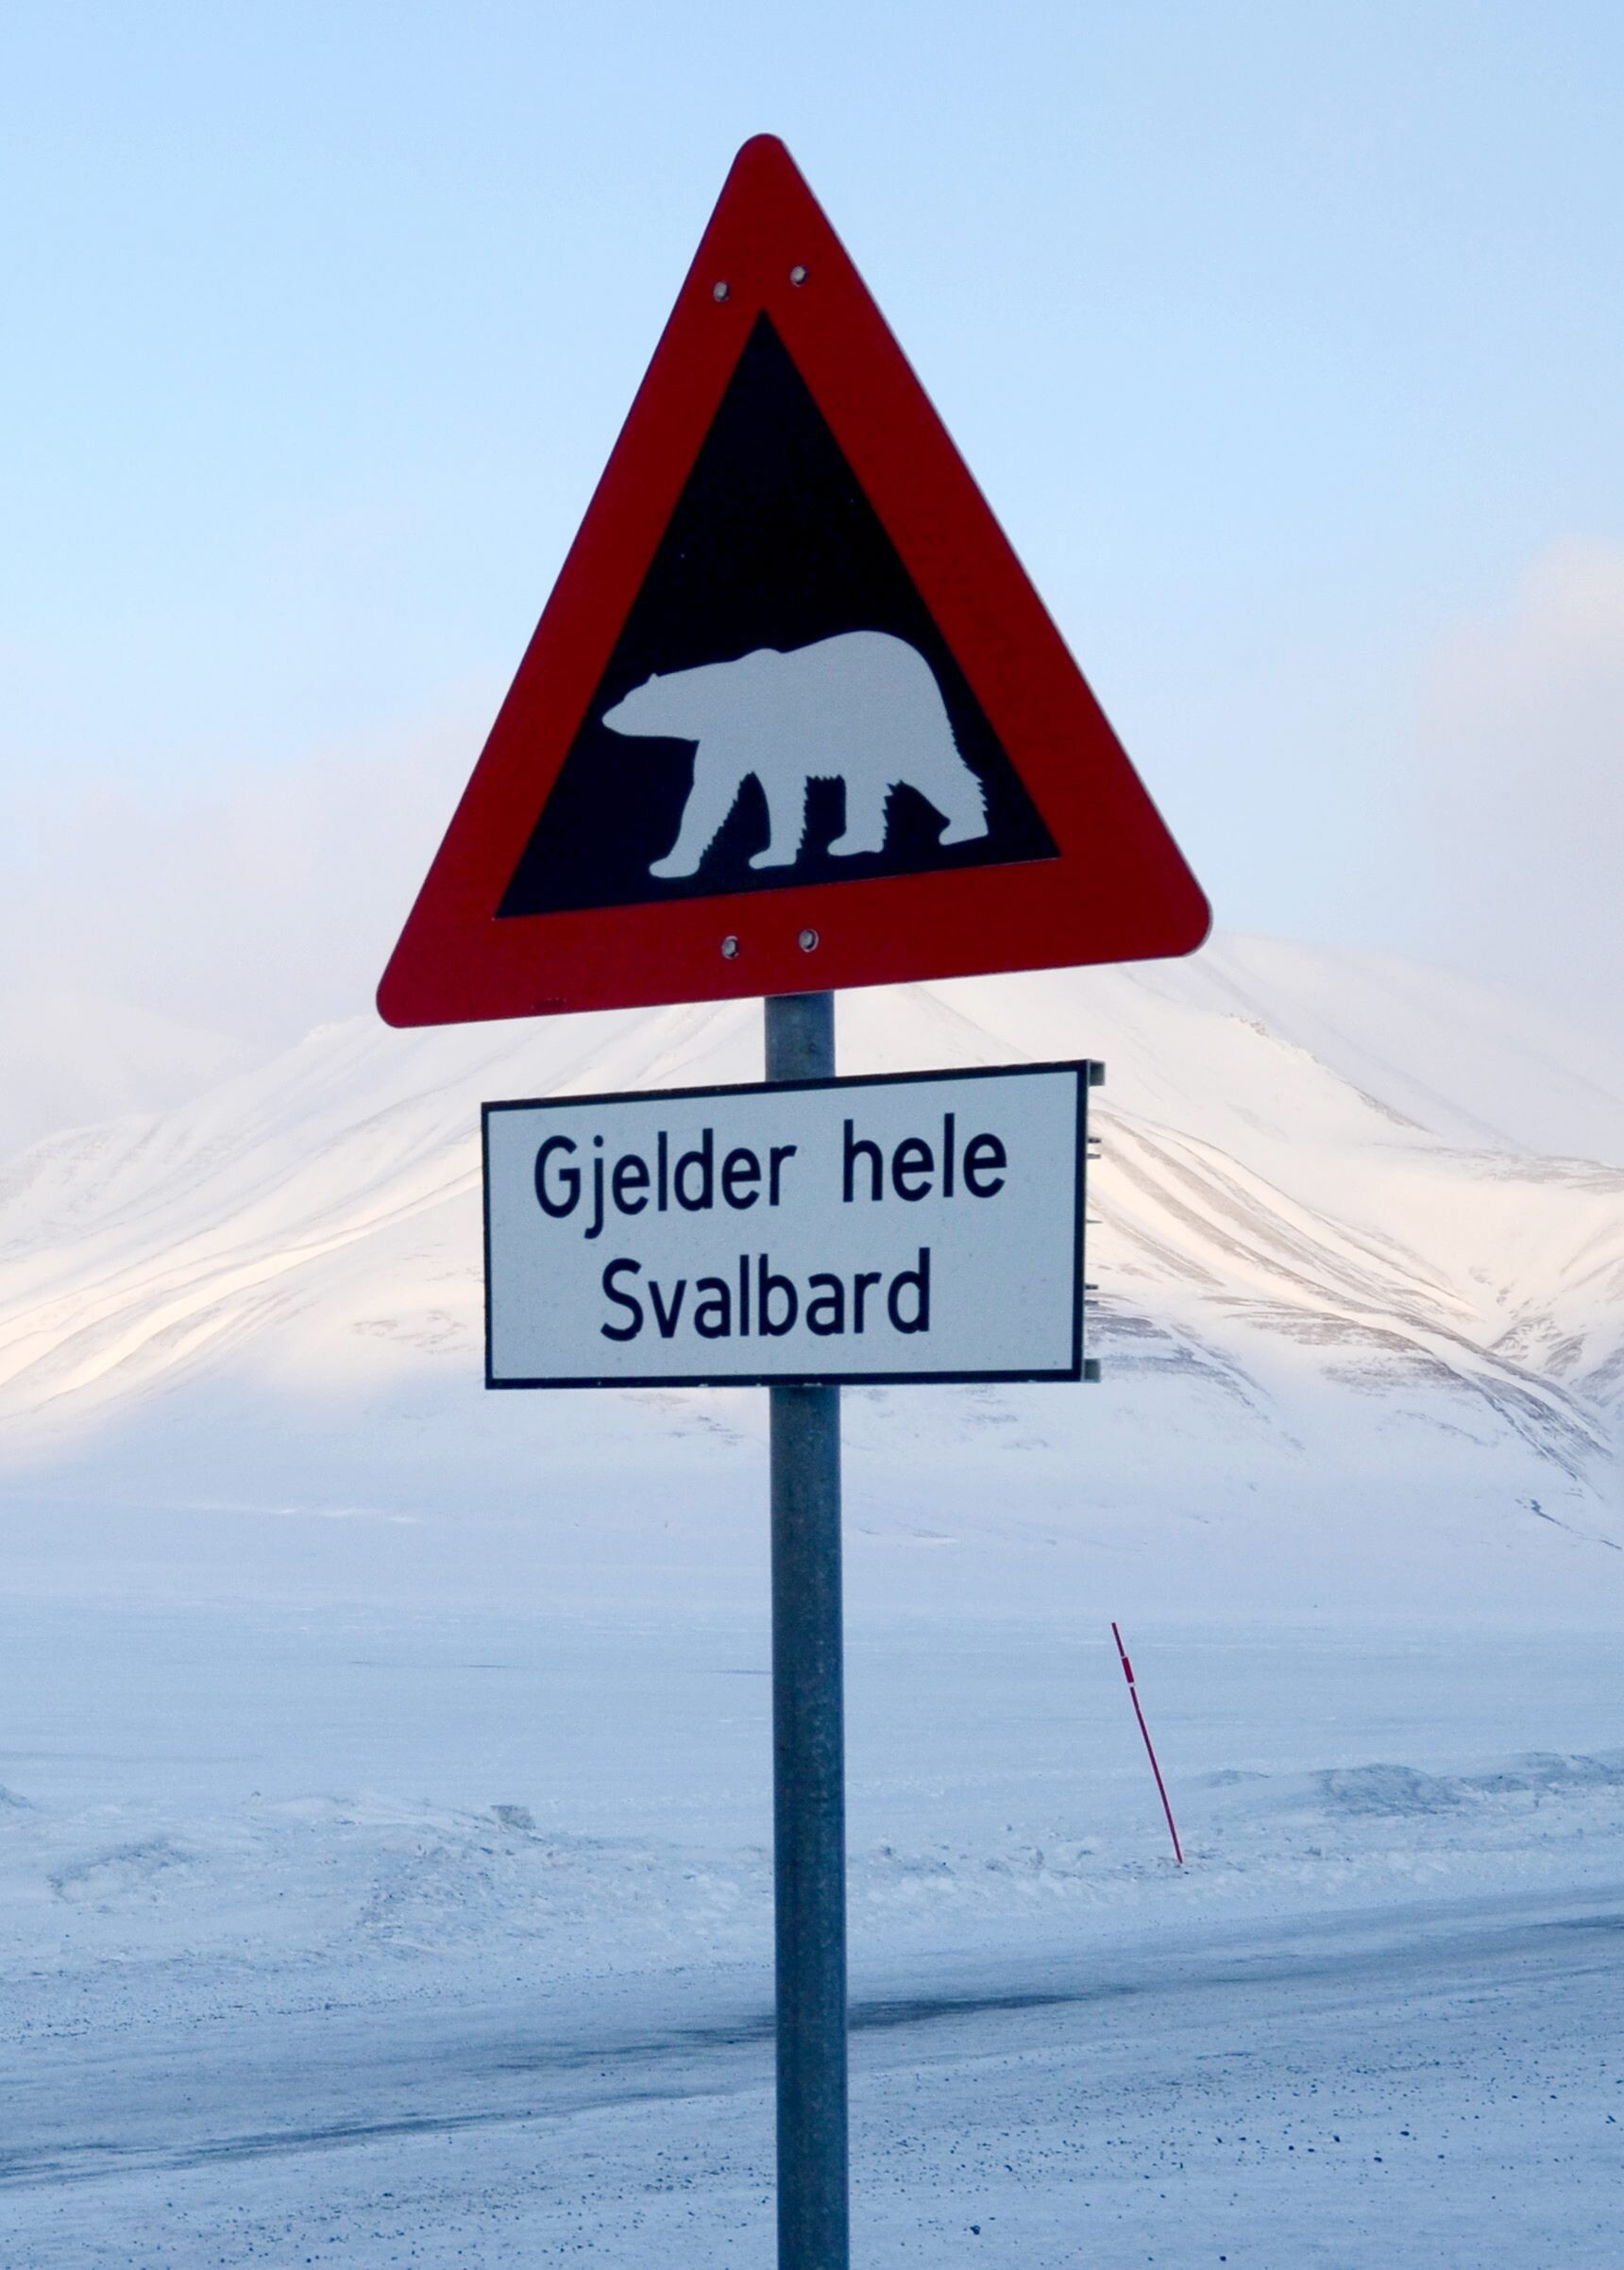 Russische vorser schiet ijsbeer dood op Spitsbergen